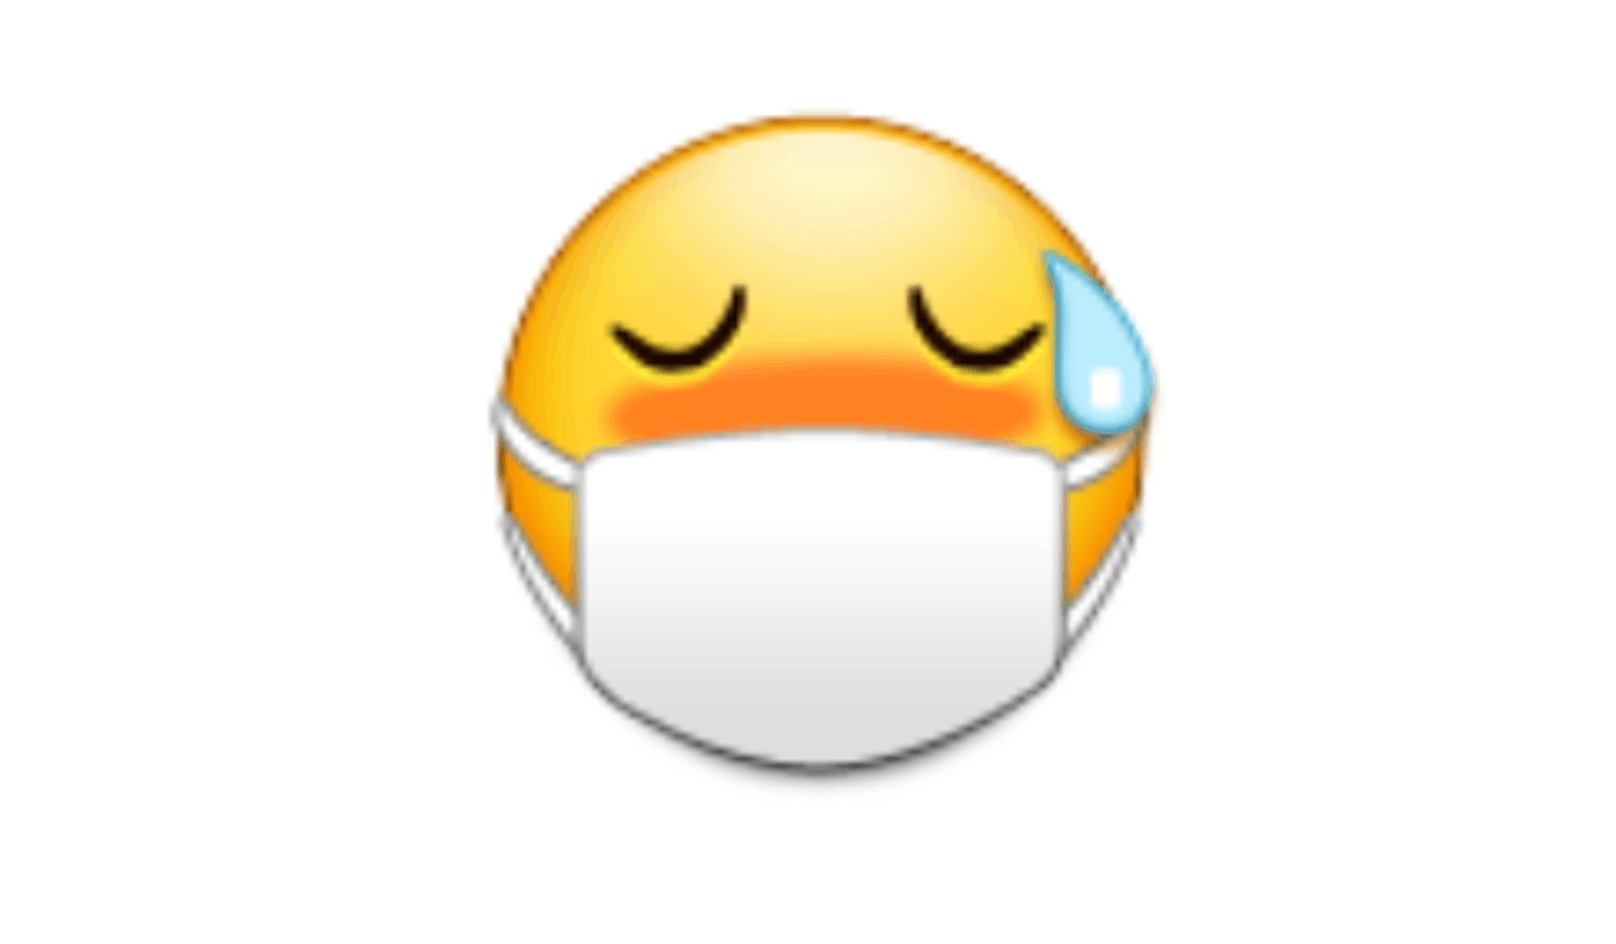 Bei Samsung schwitzte das erste Masken-Emoji im Jahr 2013.